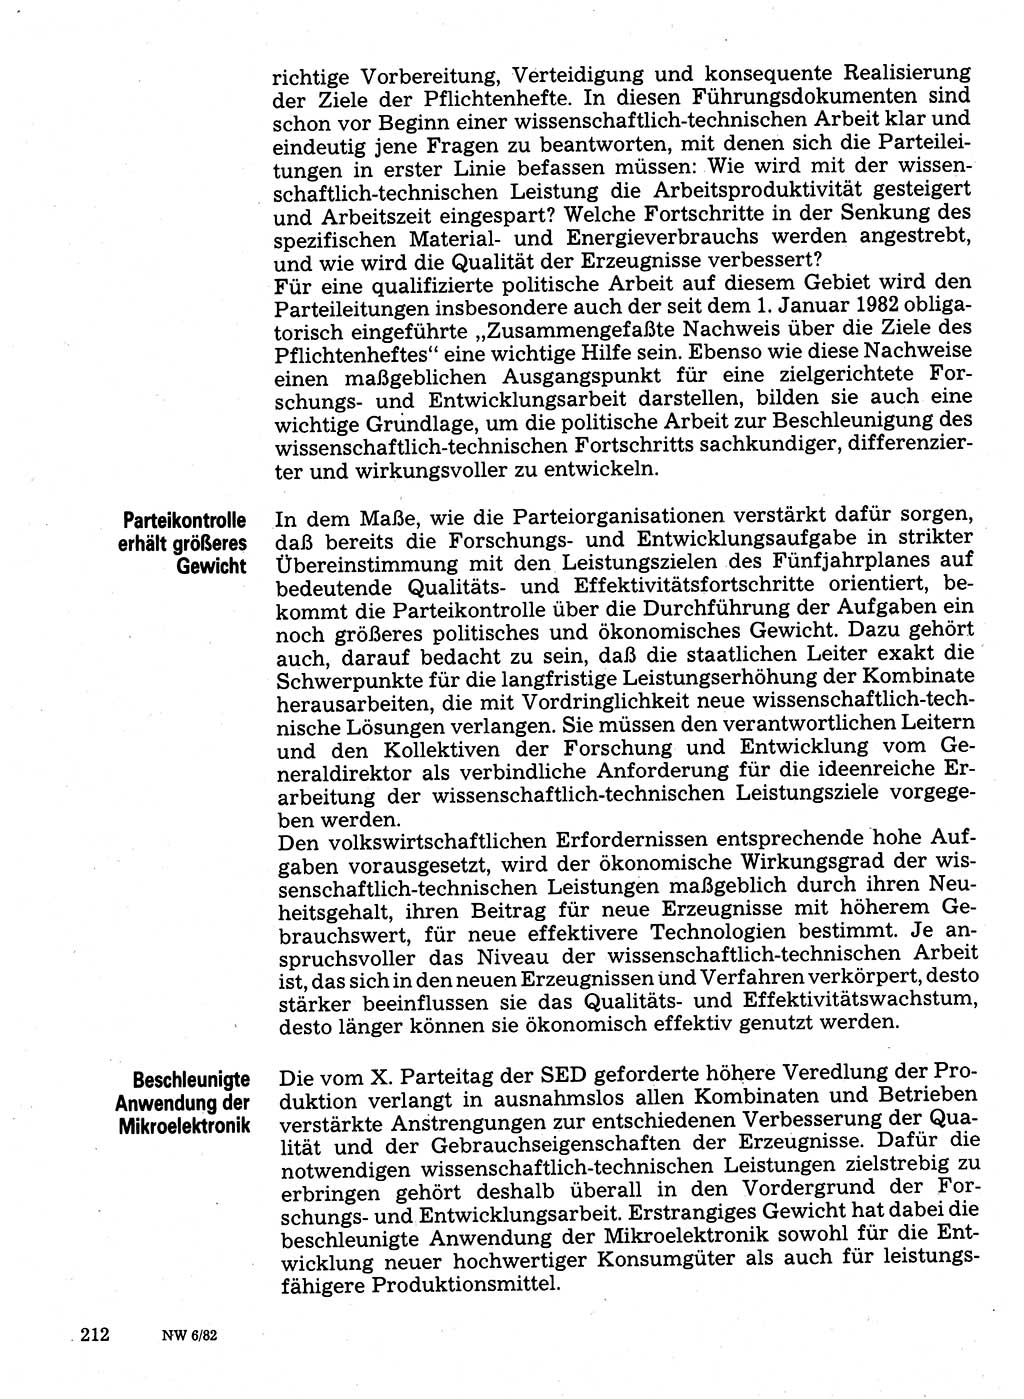 Neuer Weg (NW), Organ des Zentralkomitees (ZK) der SED (Sozialistische Einheitspartei Deutschlands) für Fragen des Parteilebens, 37. Jahrgang [Deutsche Demokratische Republik (DDR)] 1982, Seite 212 (NW ZK SED DDR 1982, S. 212)